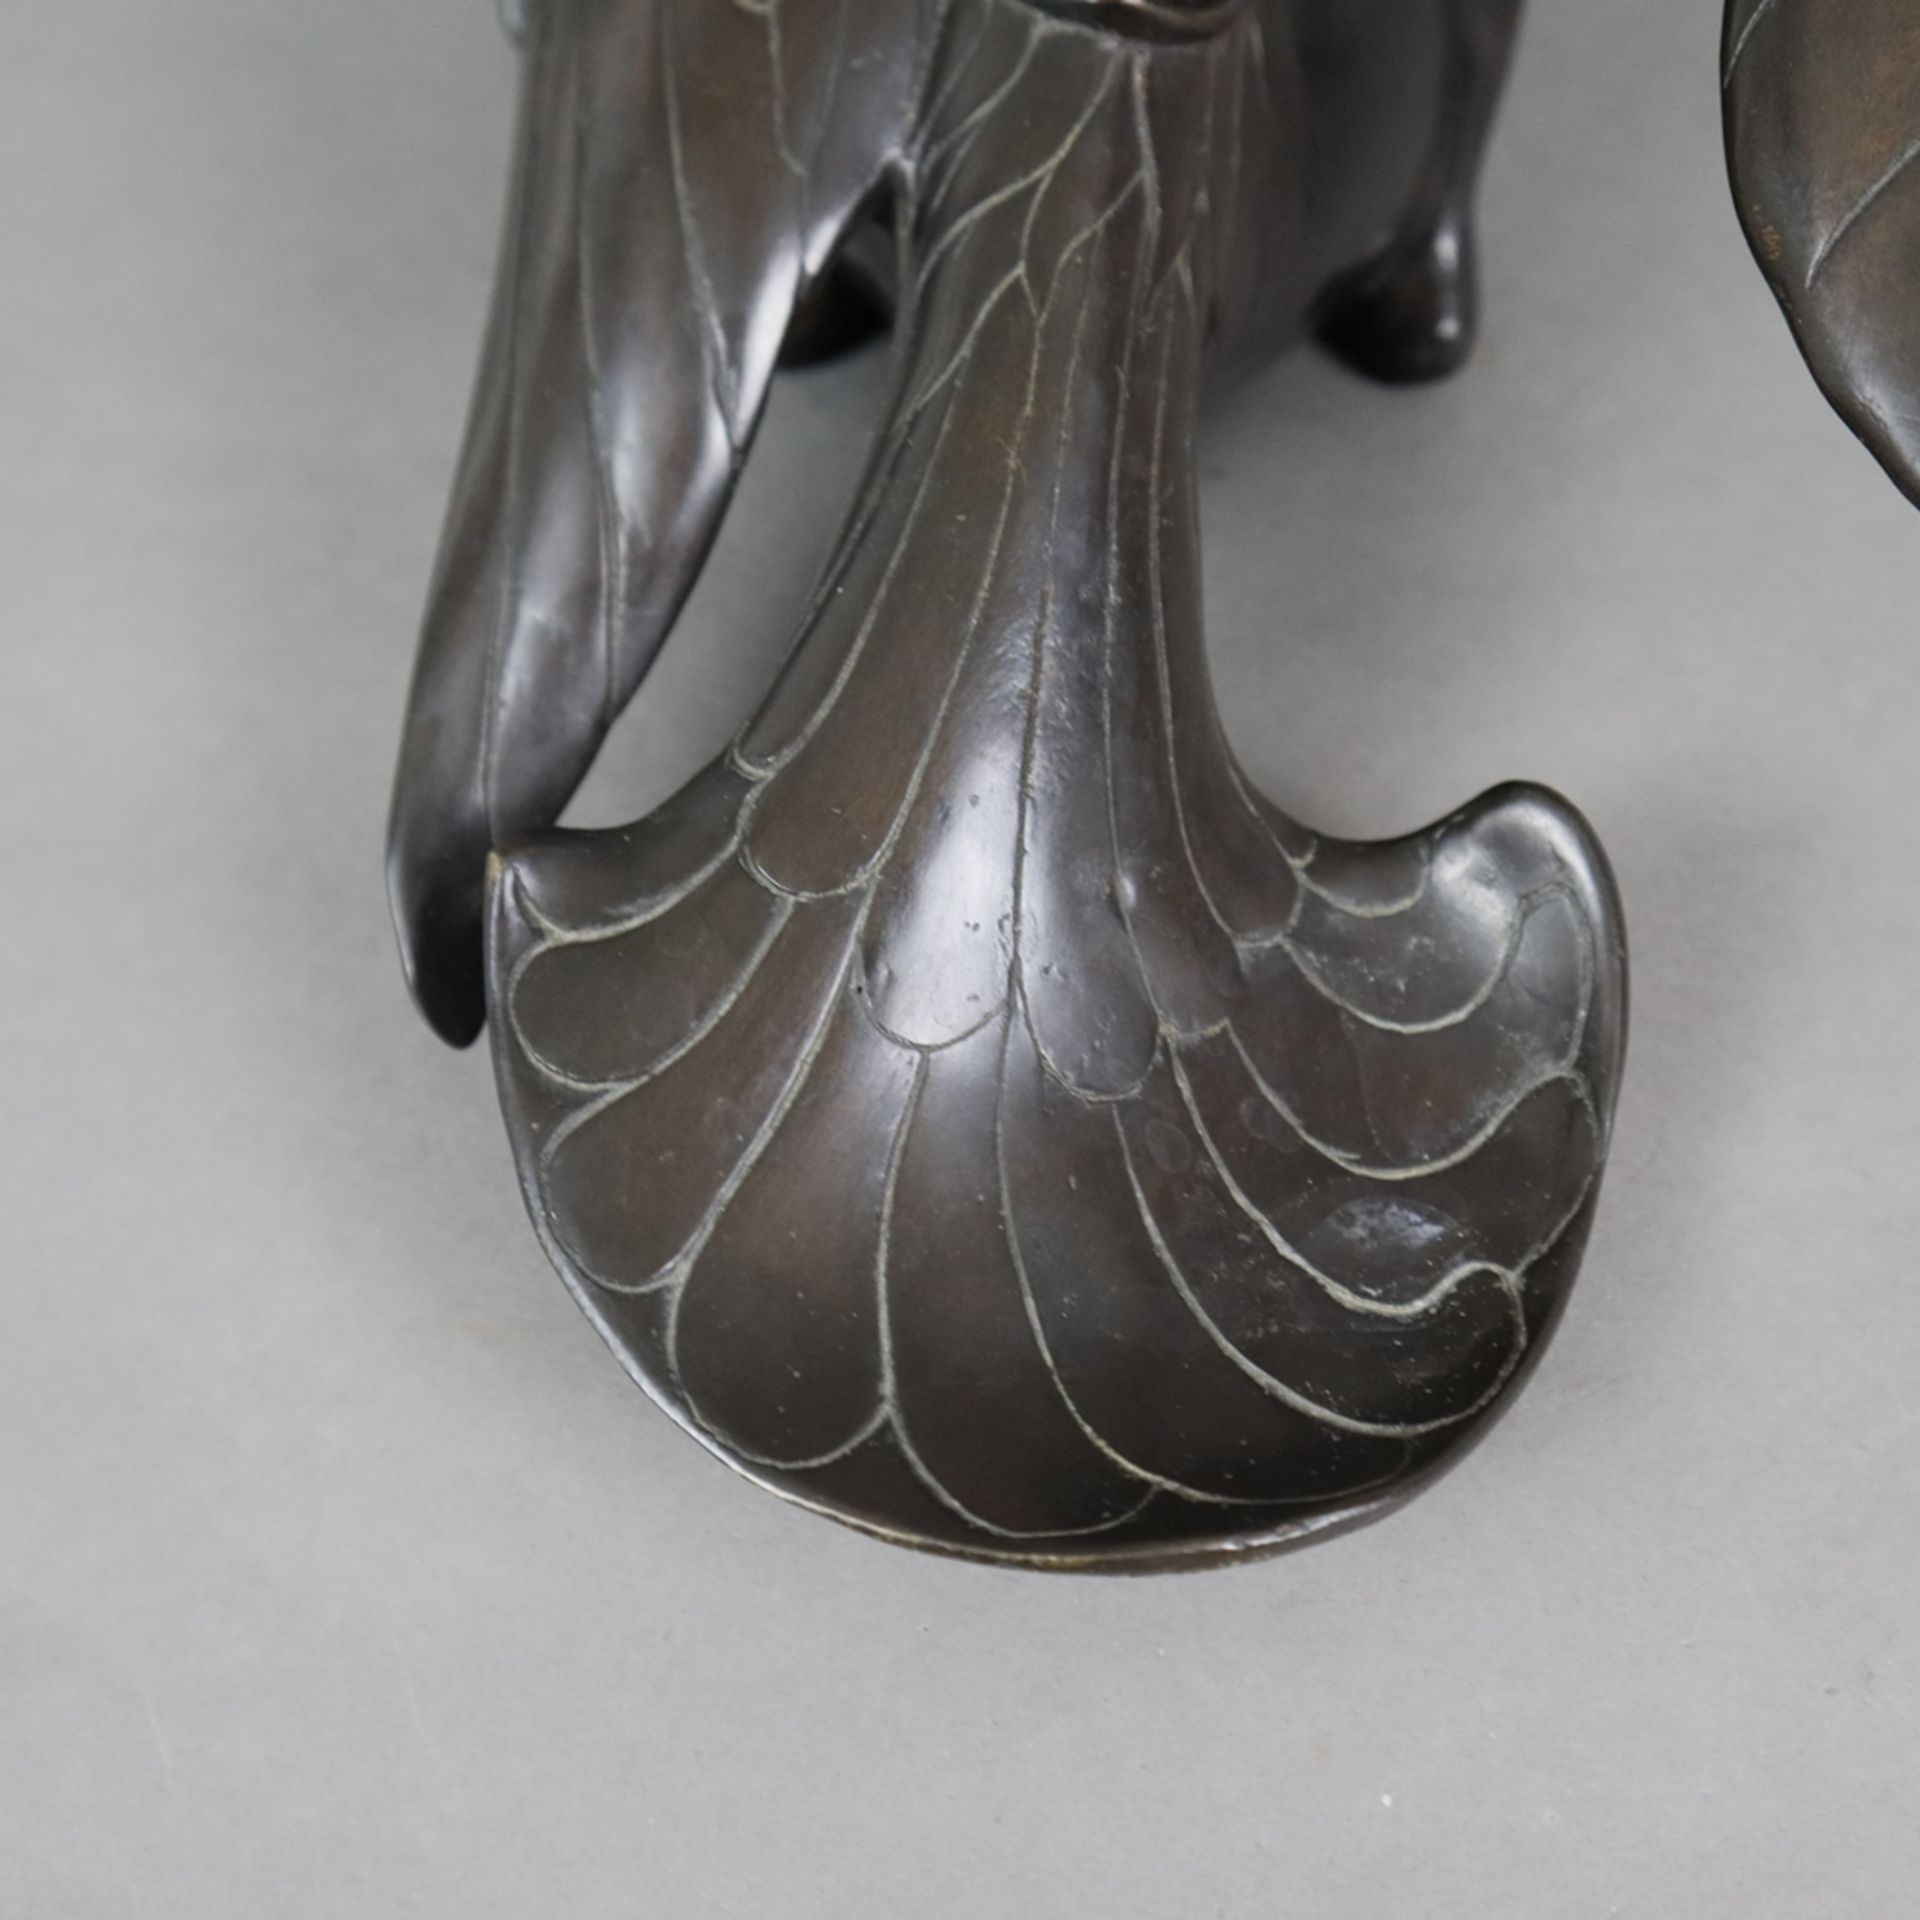 Tierfigur "Ente" - Messingguss, bronziert, unterseitig gestempelt "Santi's" mit Auflagenr. 11/5000, - Image 5 of 10